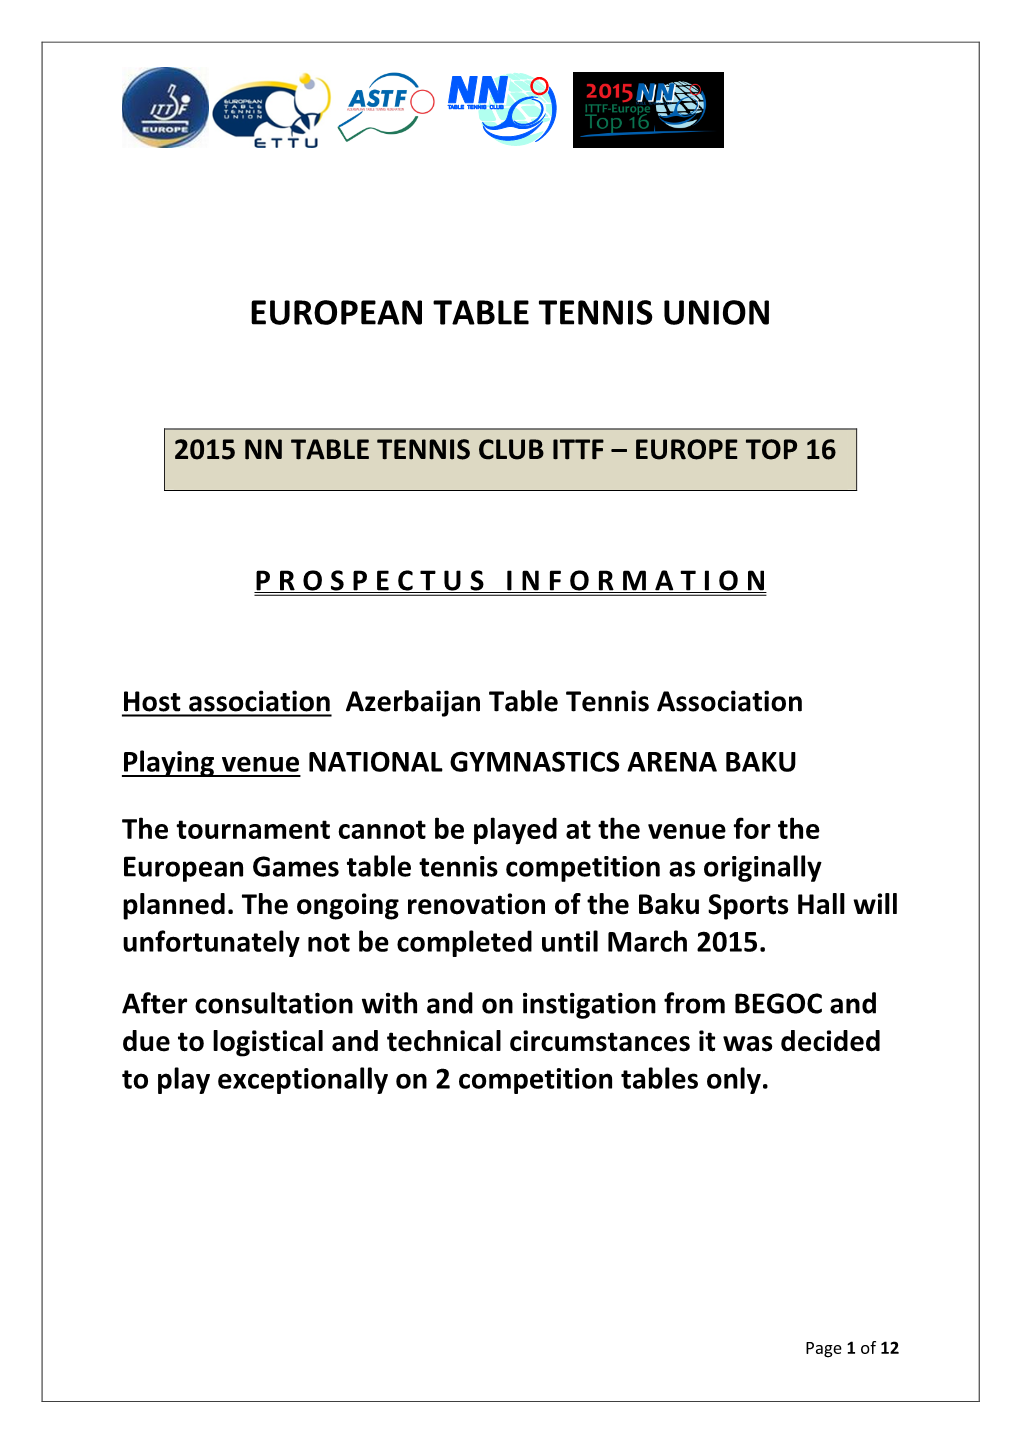 European Table Tennis Union